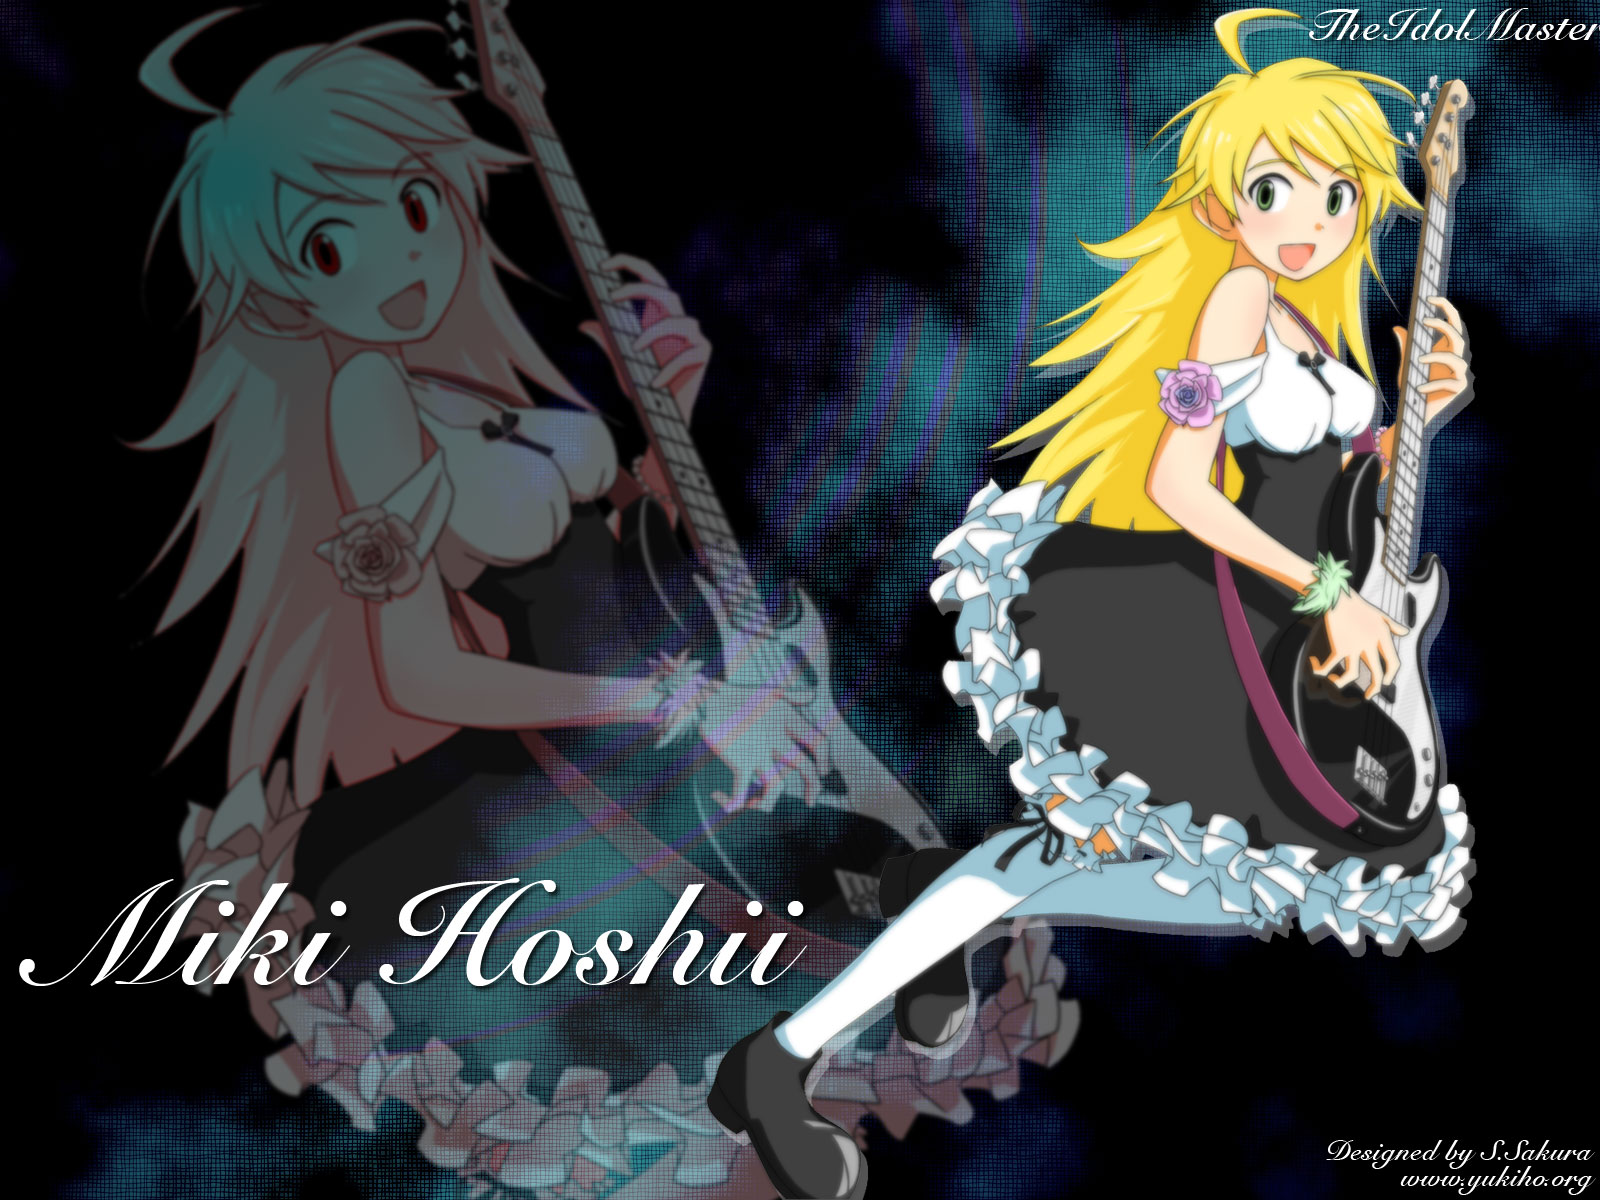 Baixe gratuitamente a imagem Anime, The Idolm@ster, Miki Hoshii na área de trabalho do seu PC